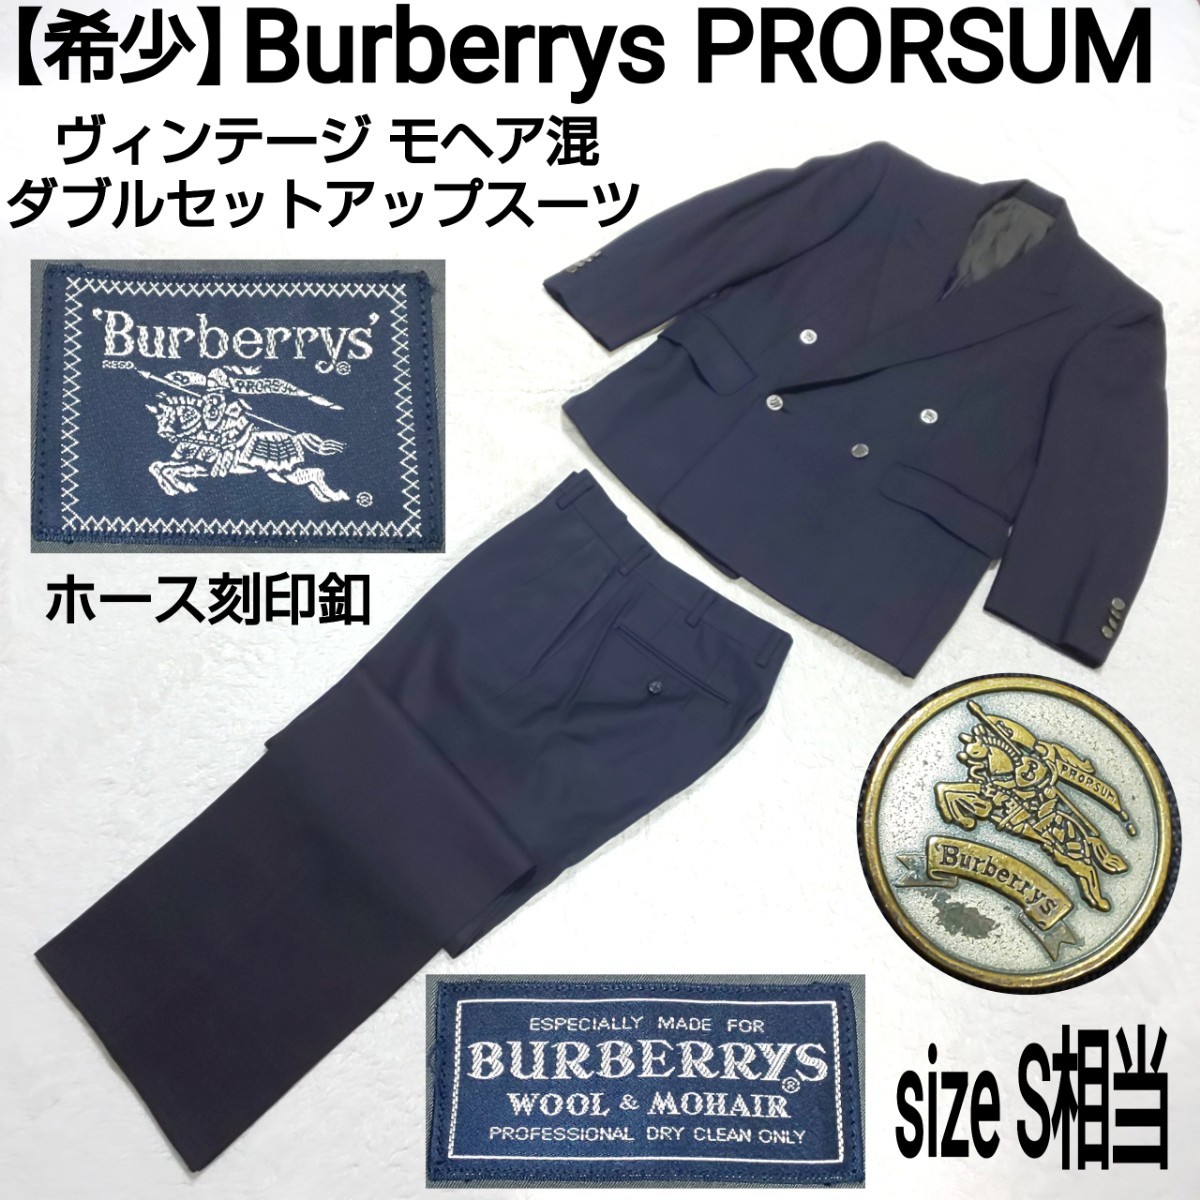 【希少】Burberrys PRORSUM ヴィンテージ モヘア混ダブルセットアップスーツ(S) ダブルジャケット ノータックパンツ ホース刻印釦 ネイビー